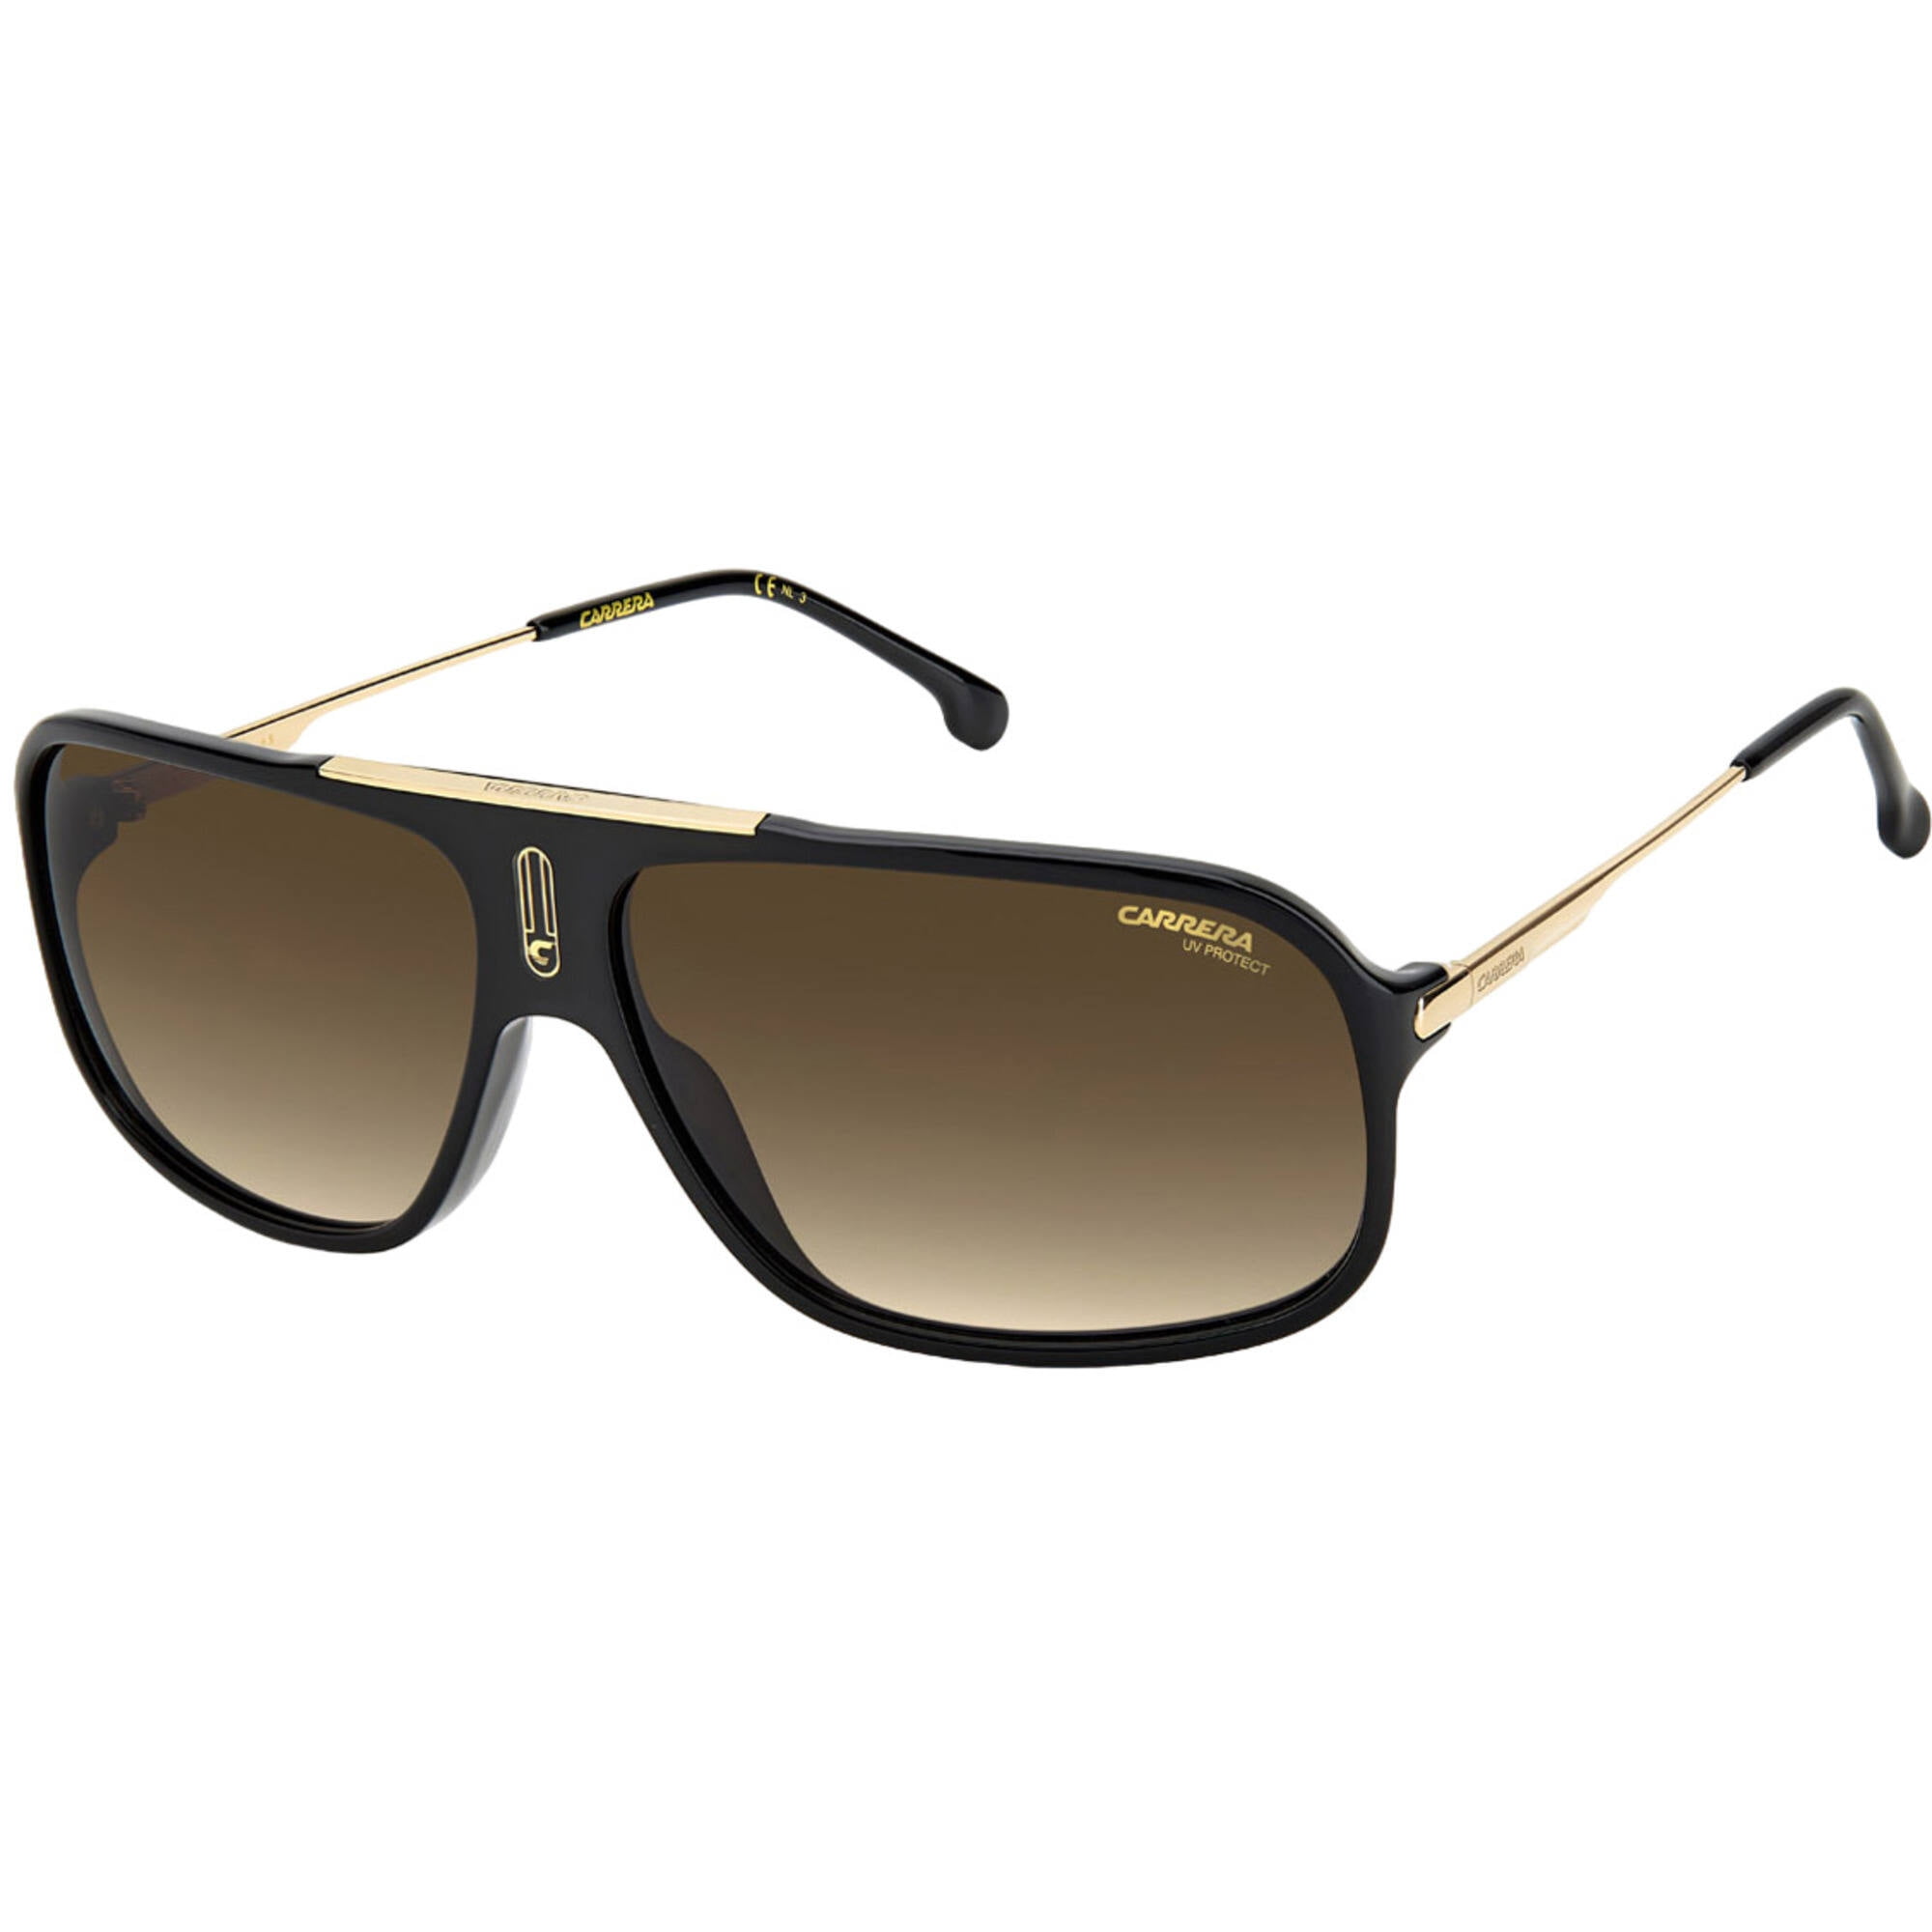 Carrera Mens Sunglasses in Men's Bags & Accessories - Walmart.com